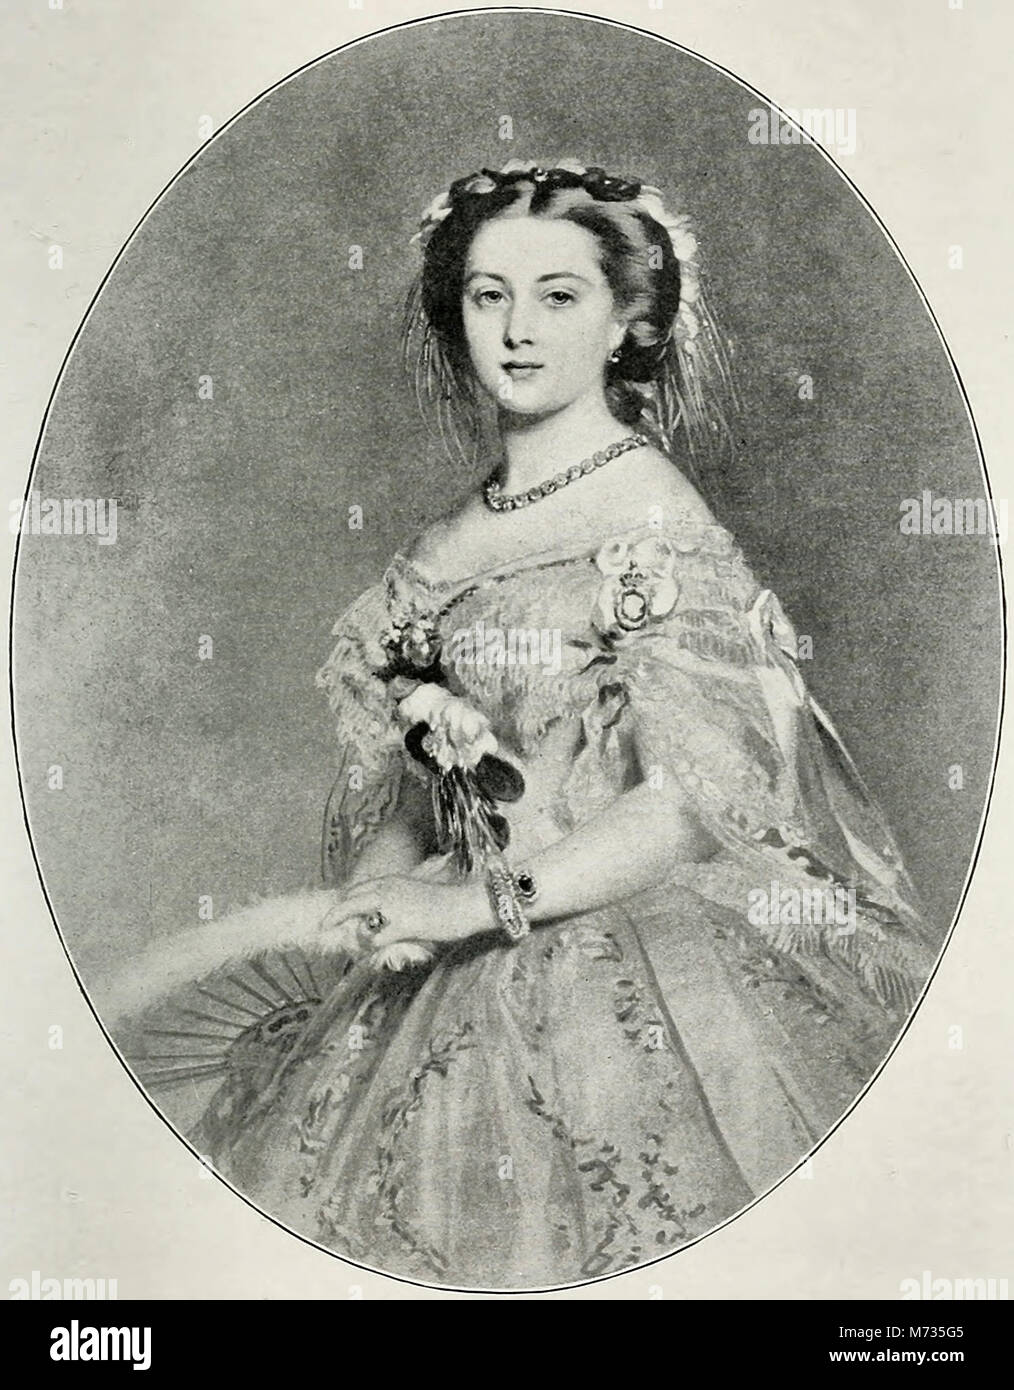 La princesse Royale, Victoria, au moment de son mariage Banque D'Images